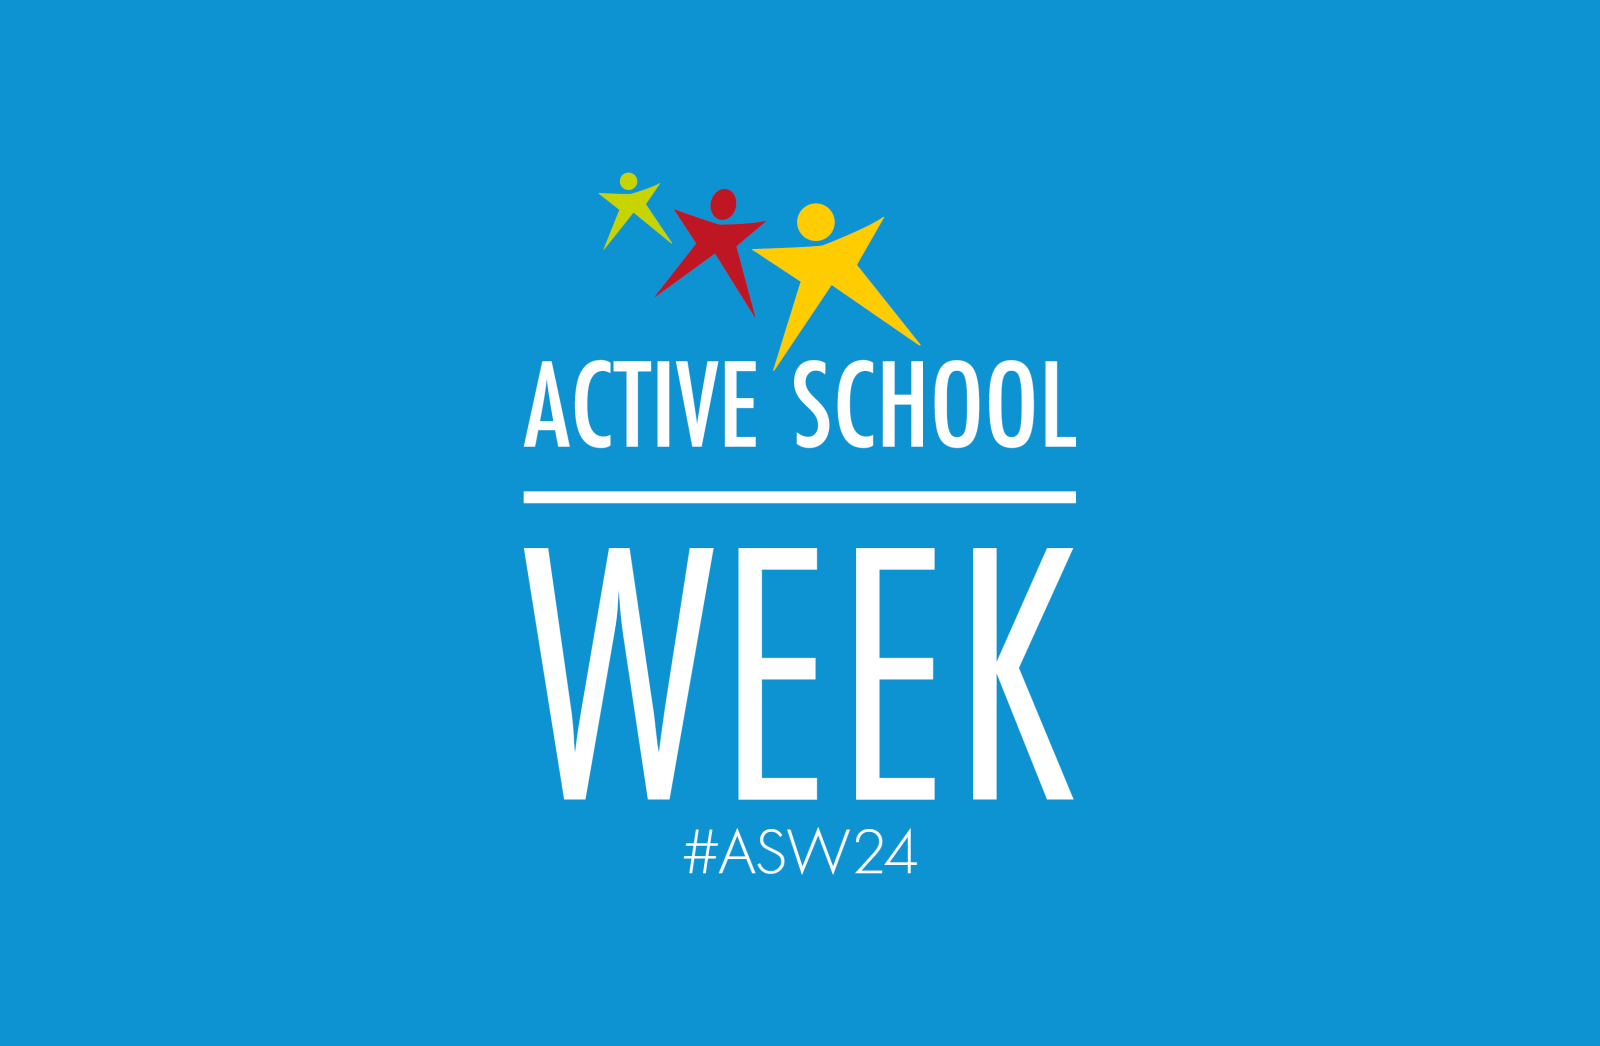 Active Schools Week